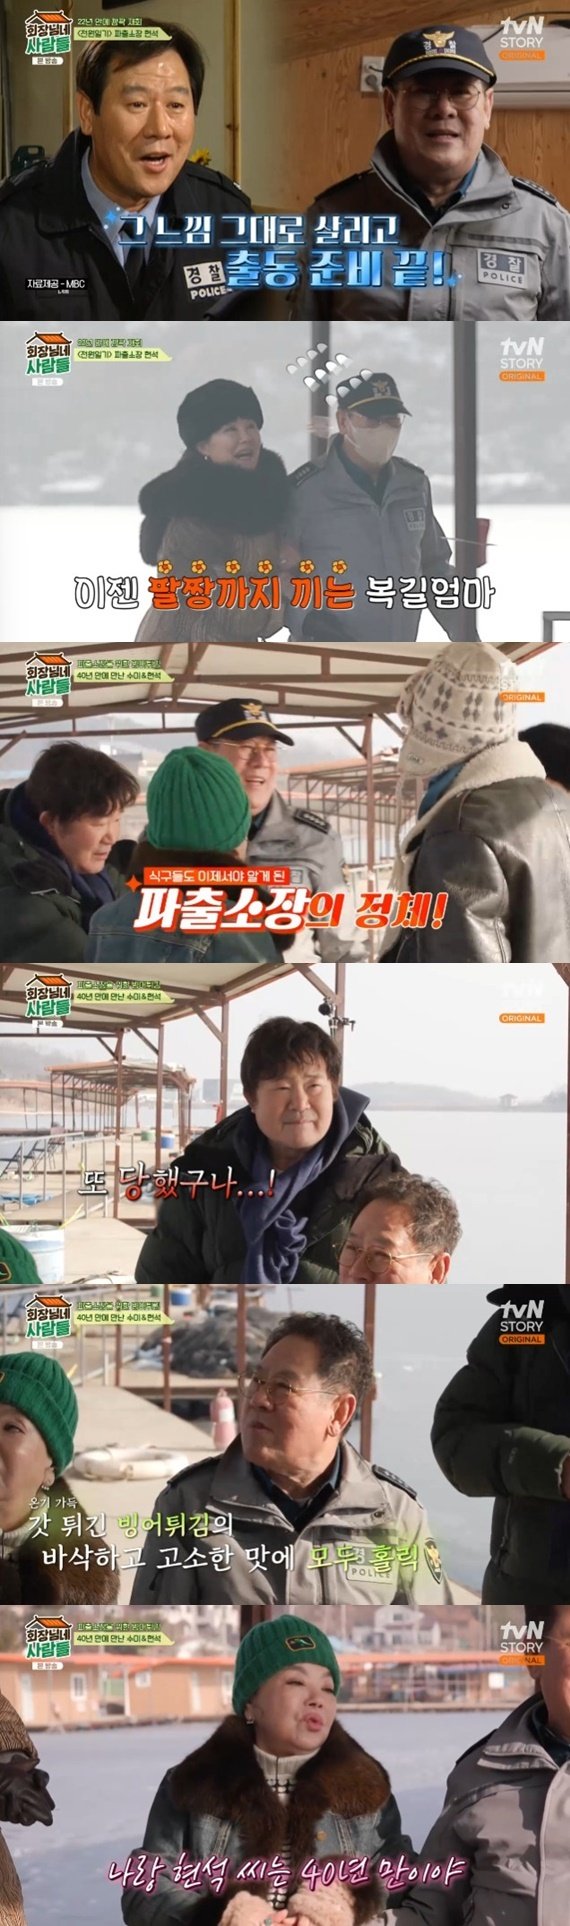 tvN STORY '회장님네 사람들' 캡처